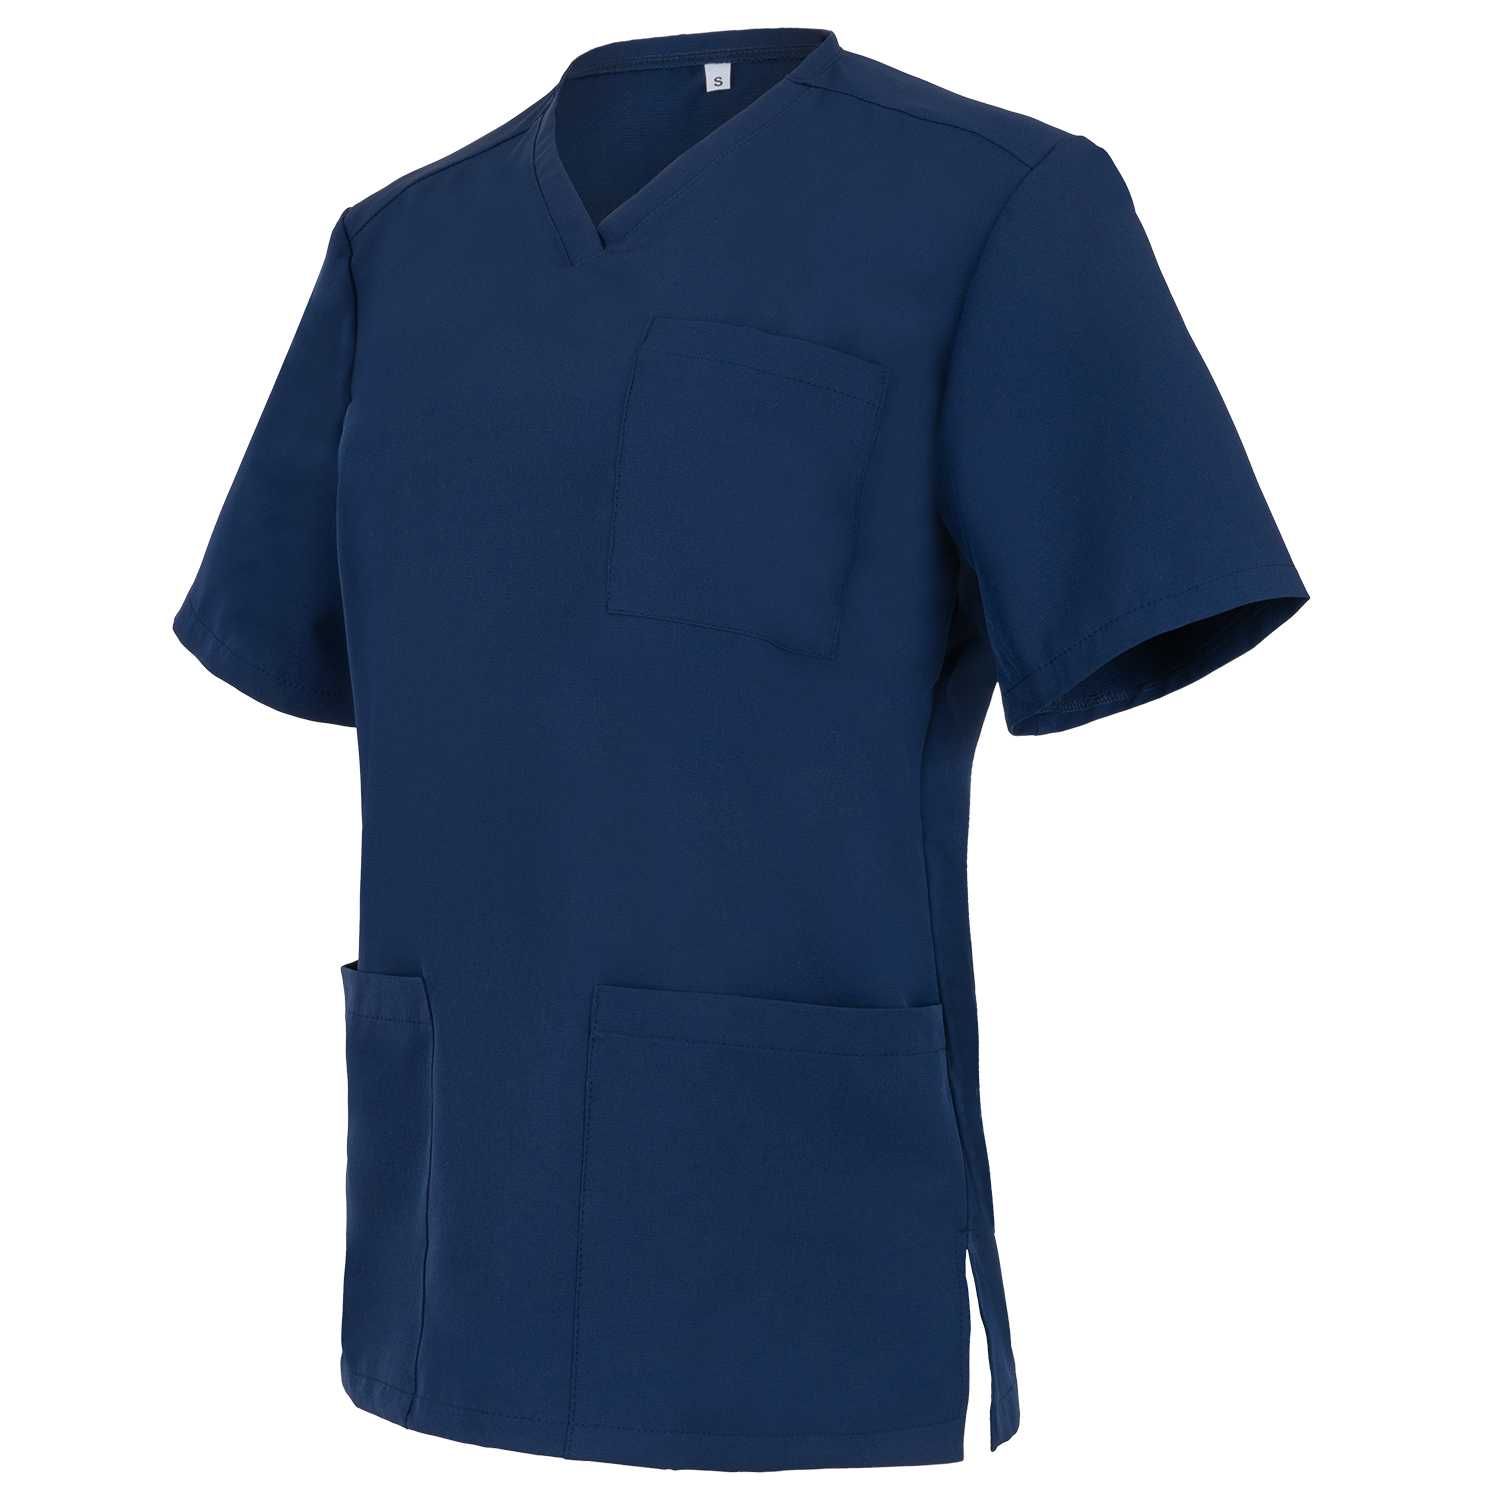 Bluza Medyczna Fresh Granatowa Producent Komplet medyczny Rozmiar S